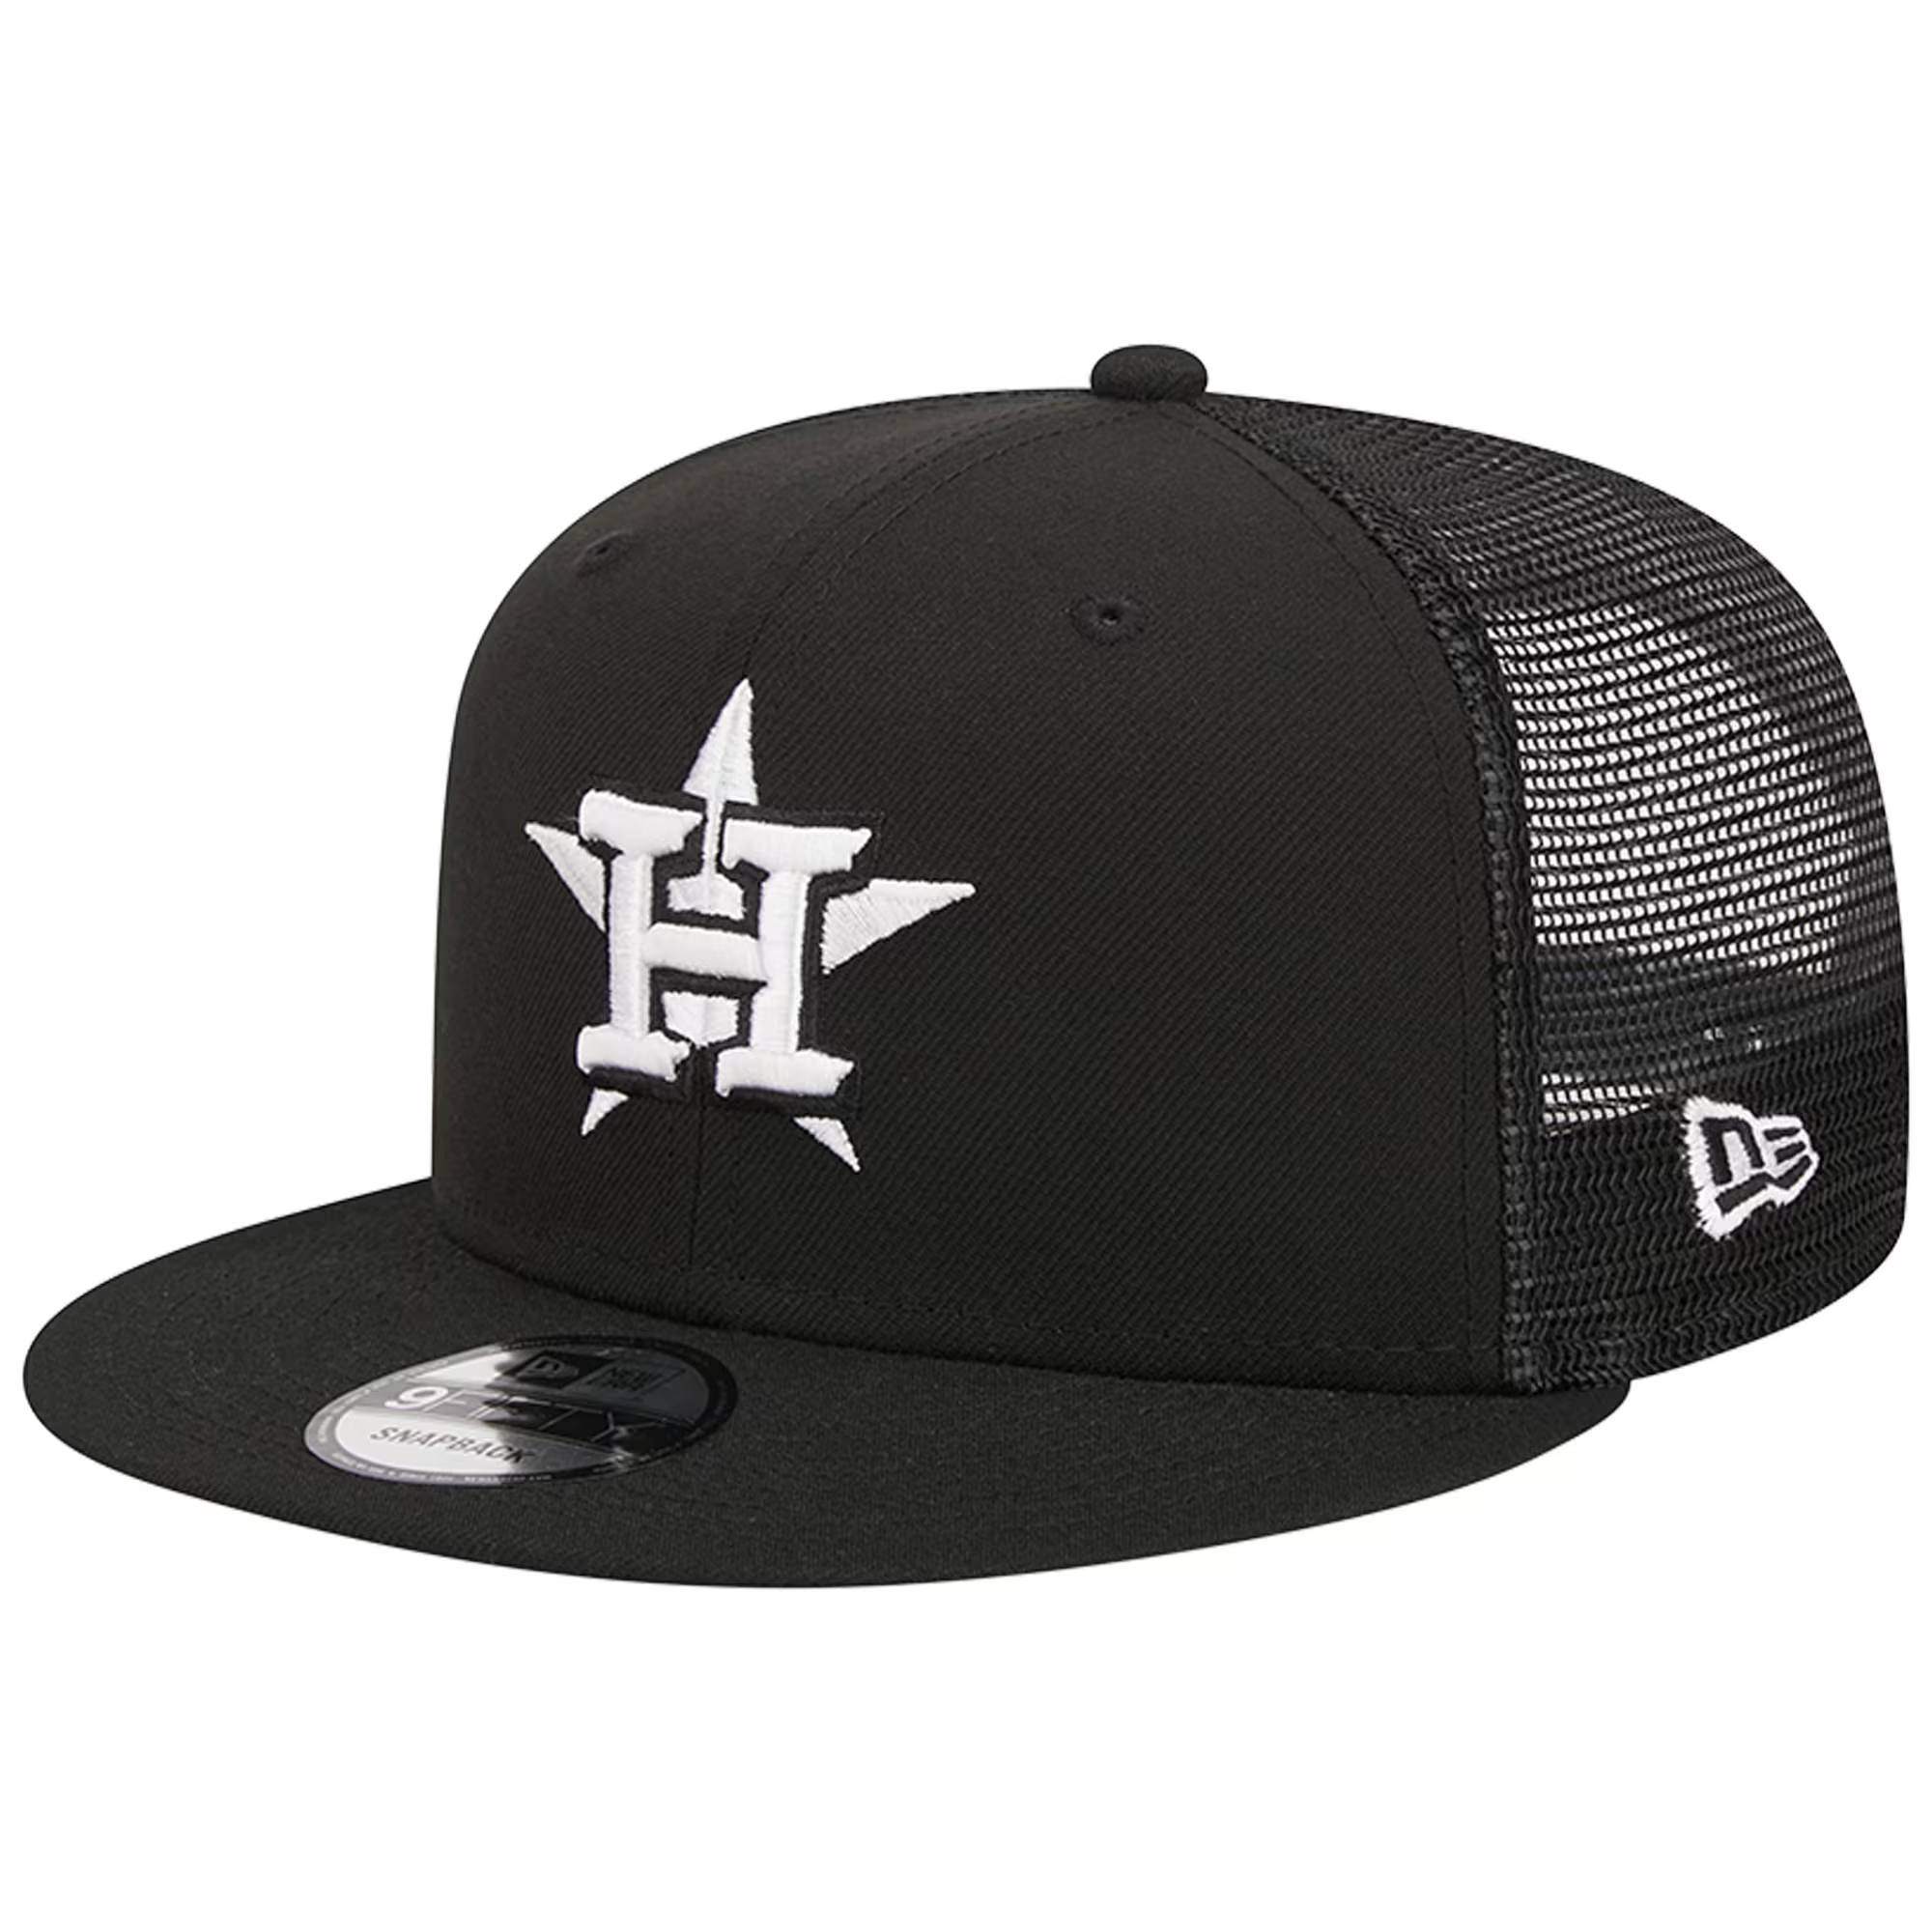 New Era Houston Astros Trucker 9FIFTY Snapback Hat-Black/White